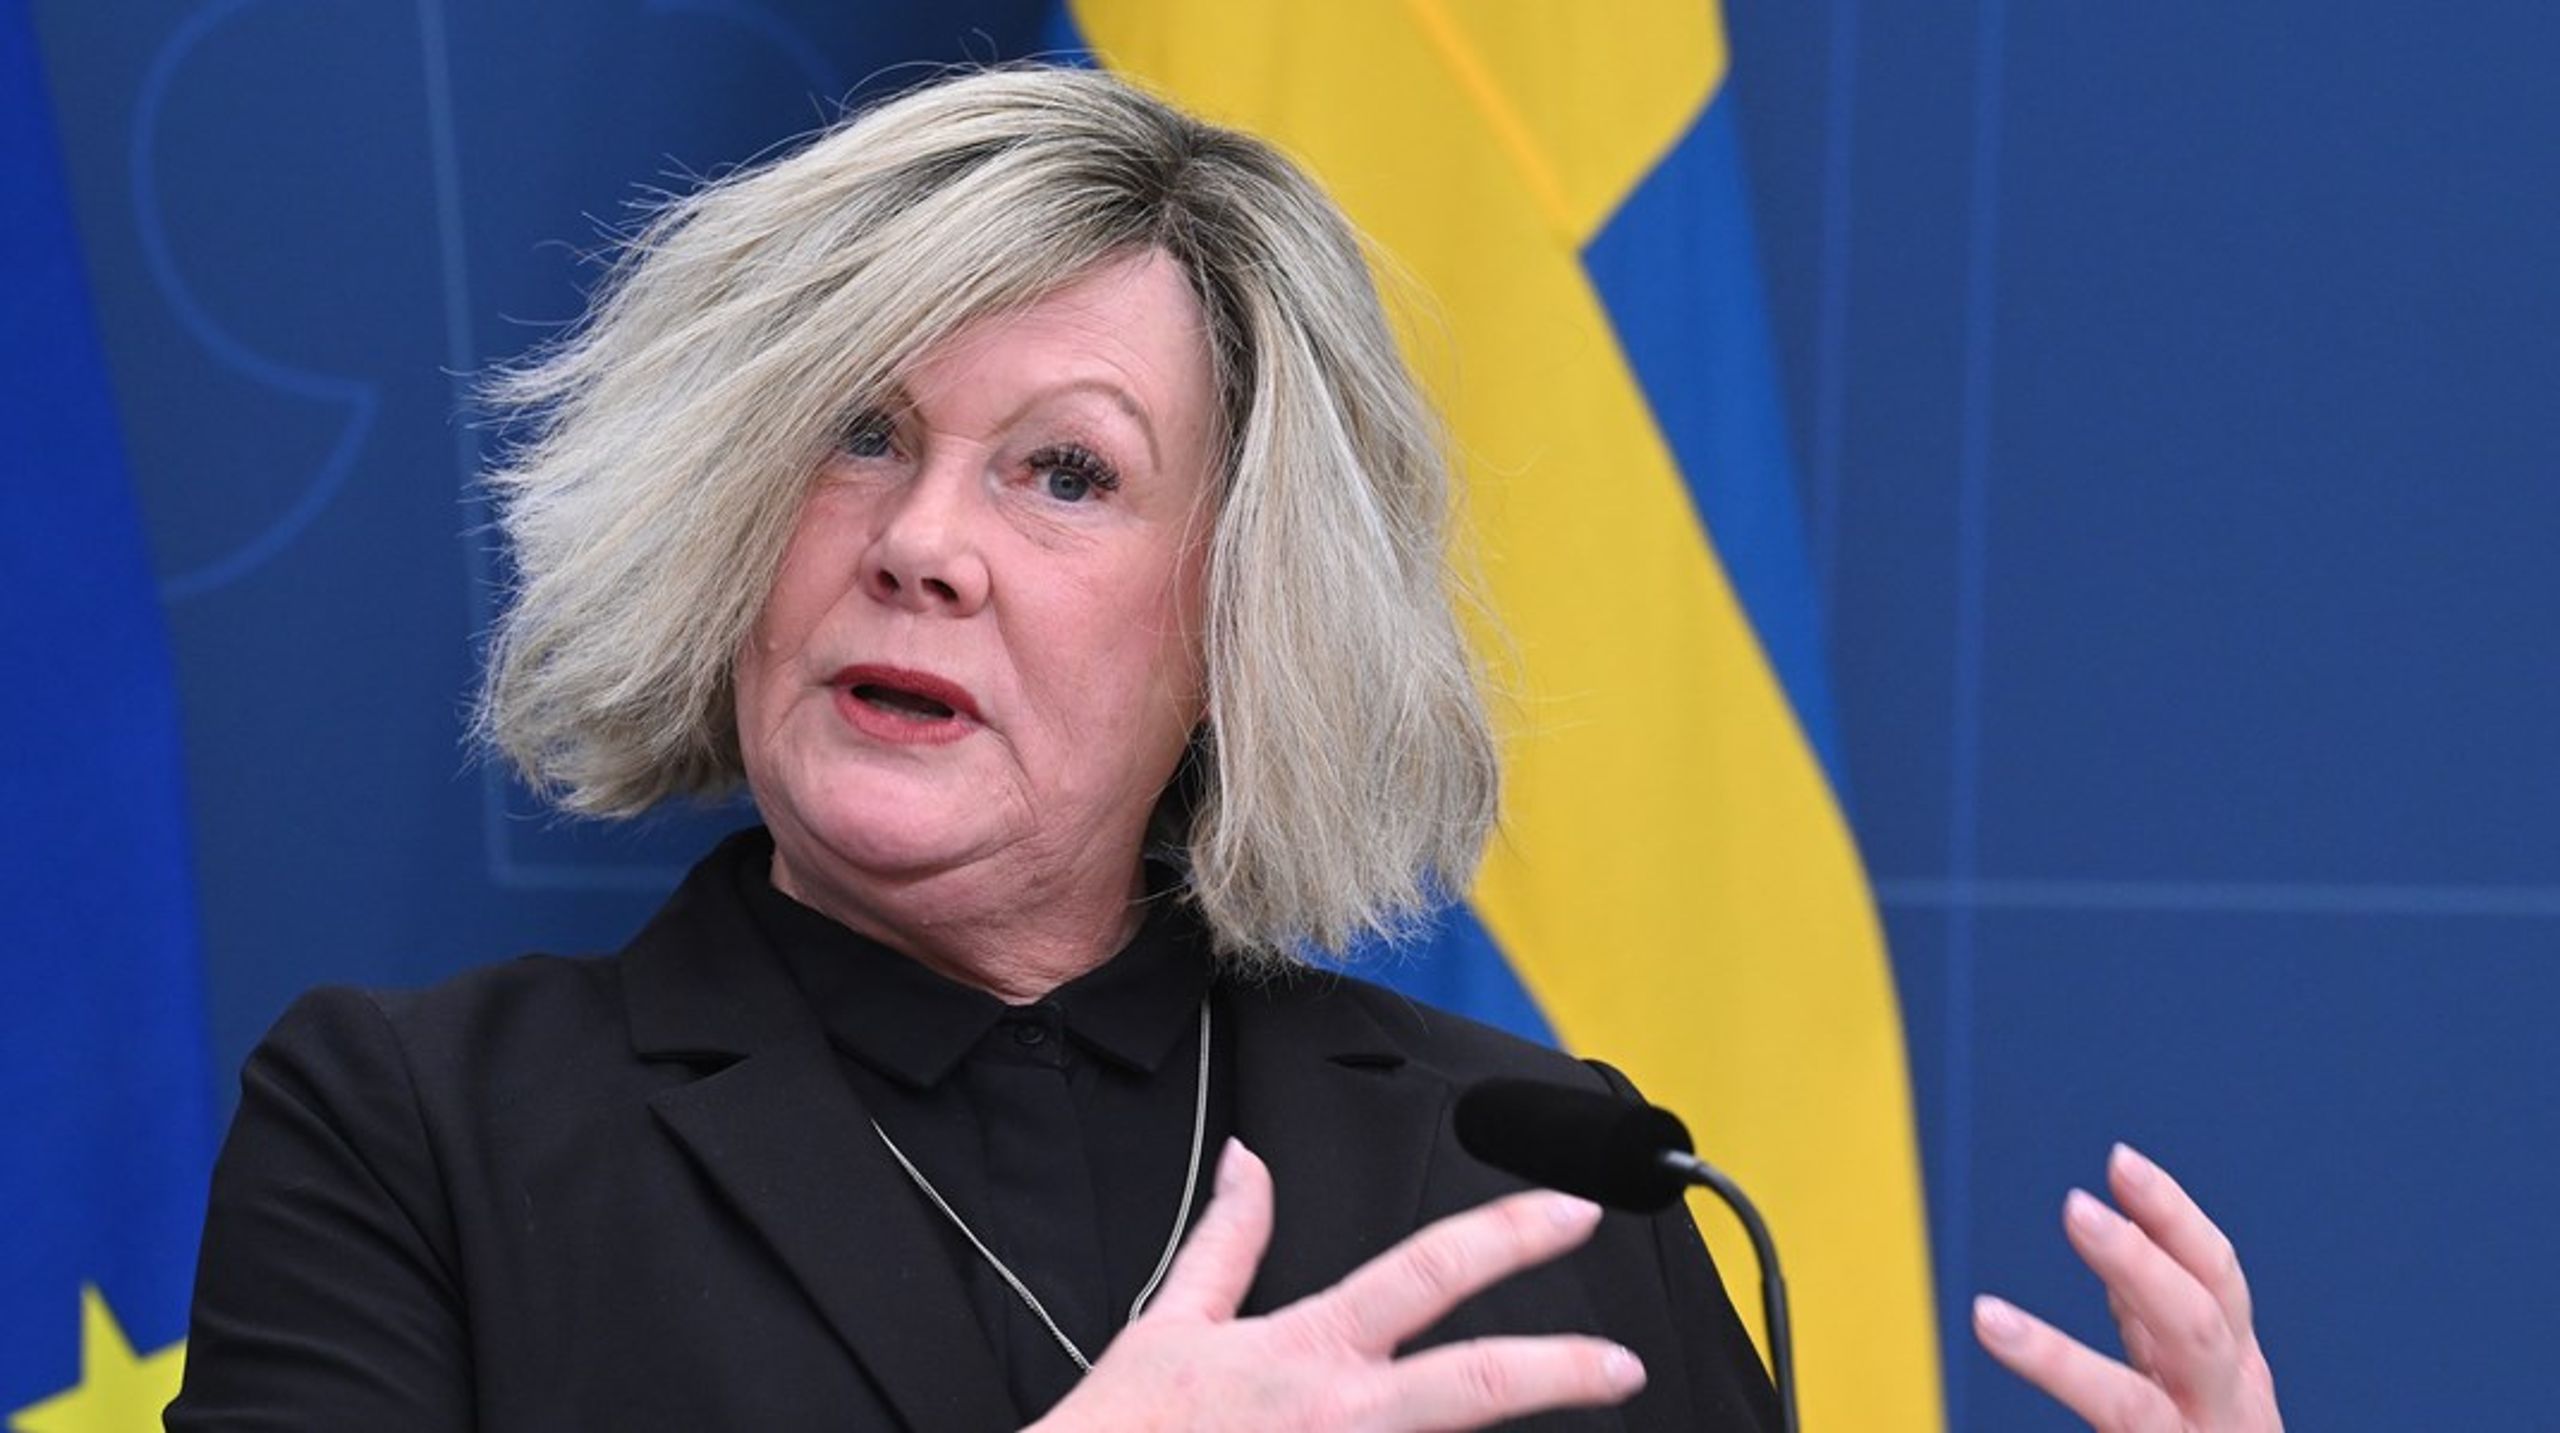 Anna Ledin. Direktör från Göteborgs stad blir generaldirektör vid myndighet i samma stad.